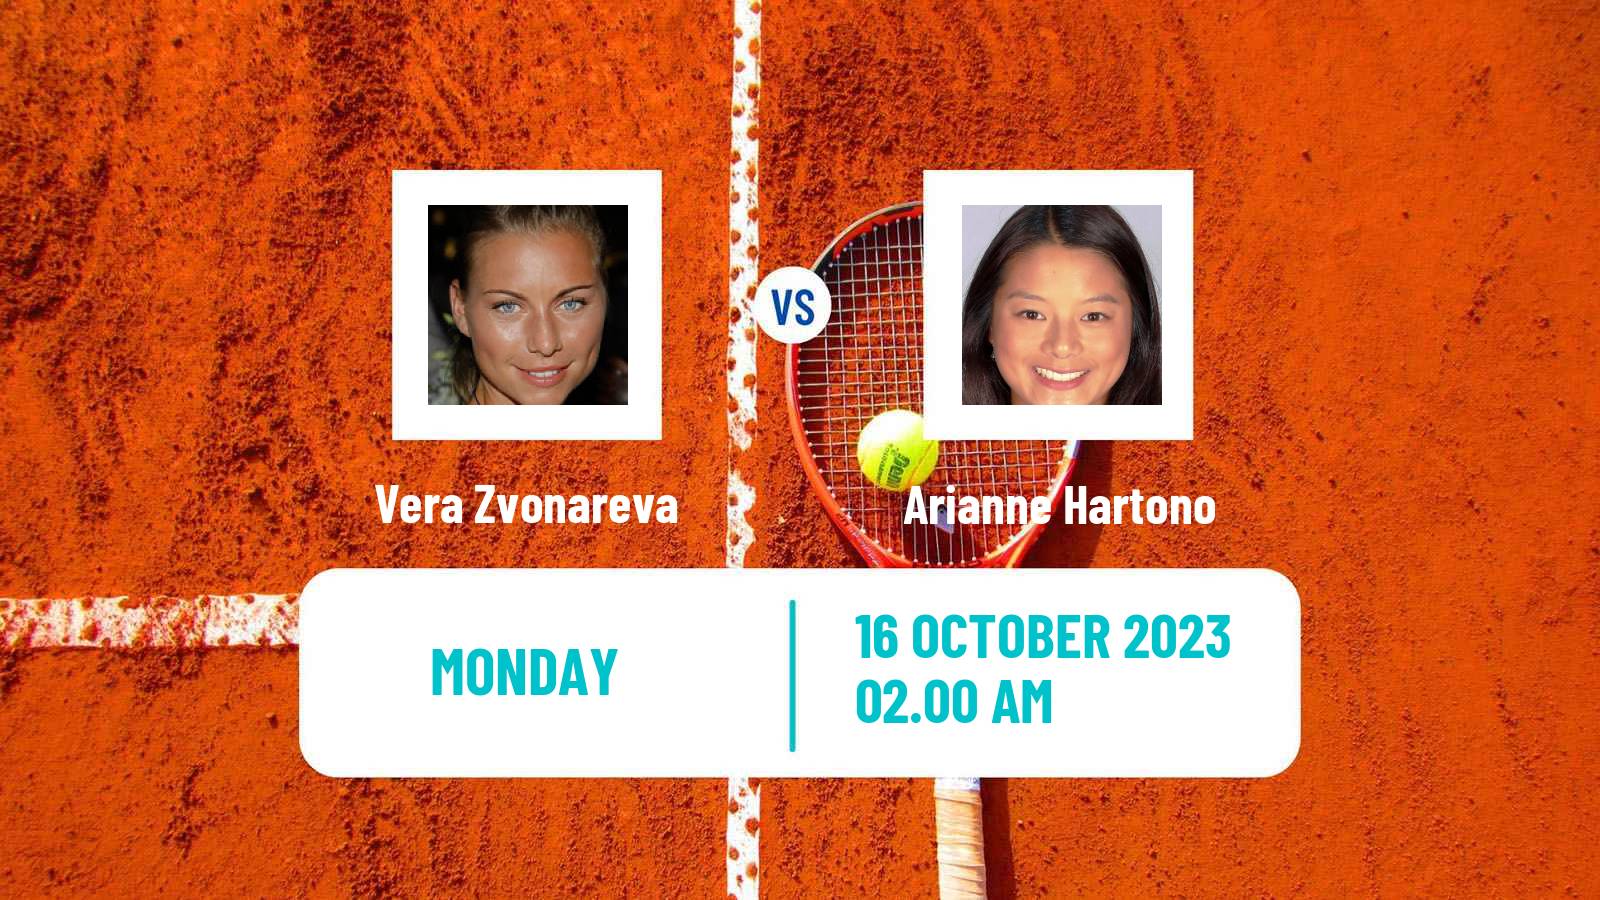 Tennis WTA Nanchang Vera Zvonareva - Arianne Hartono